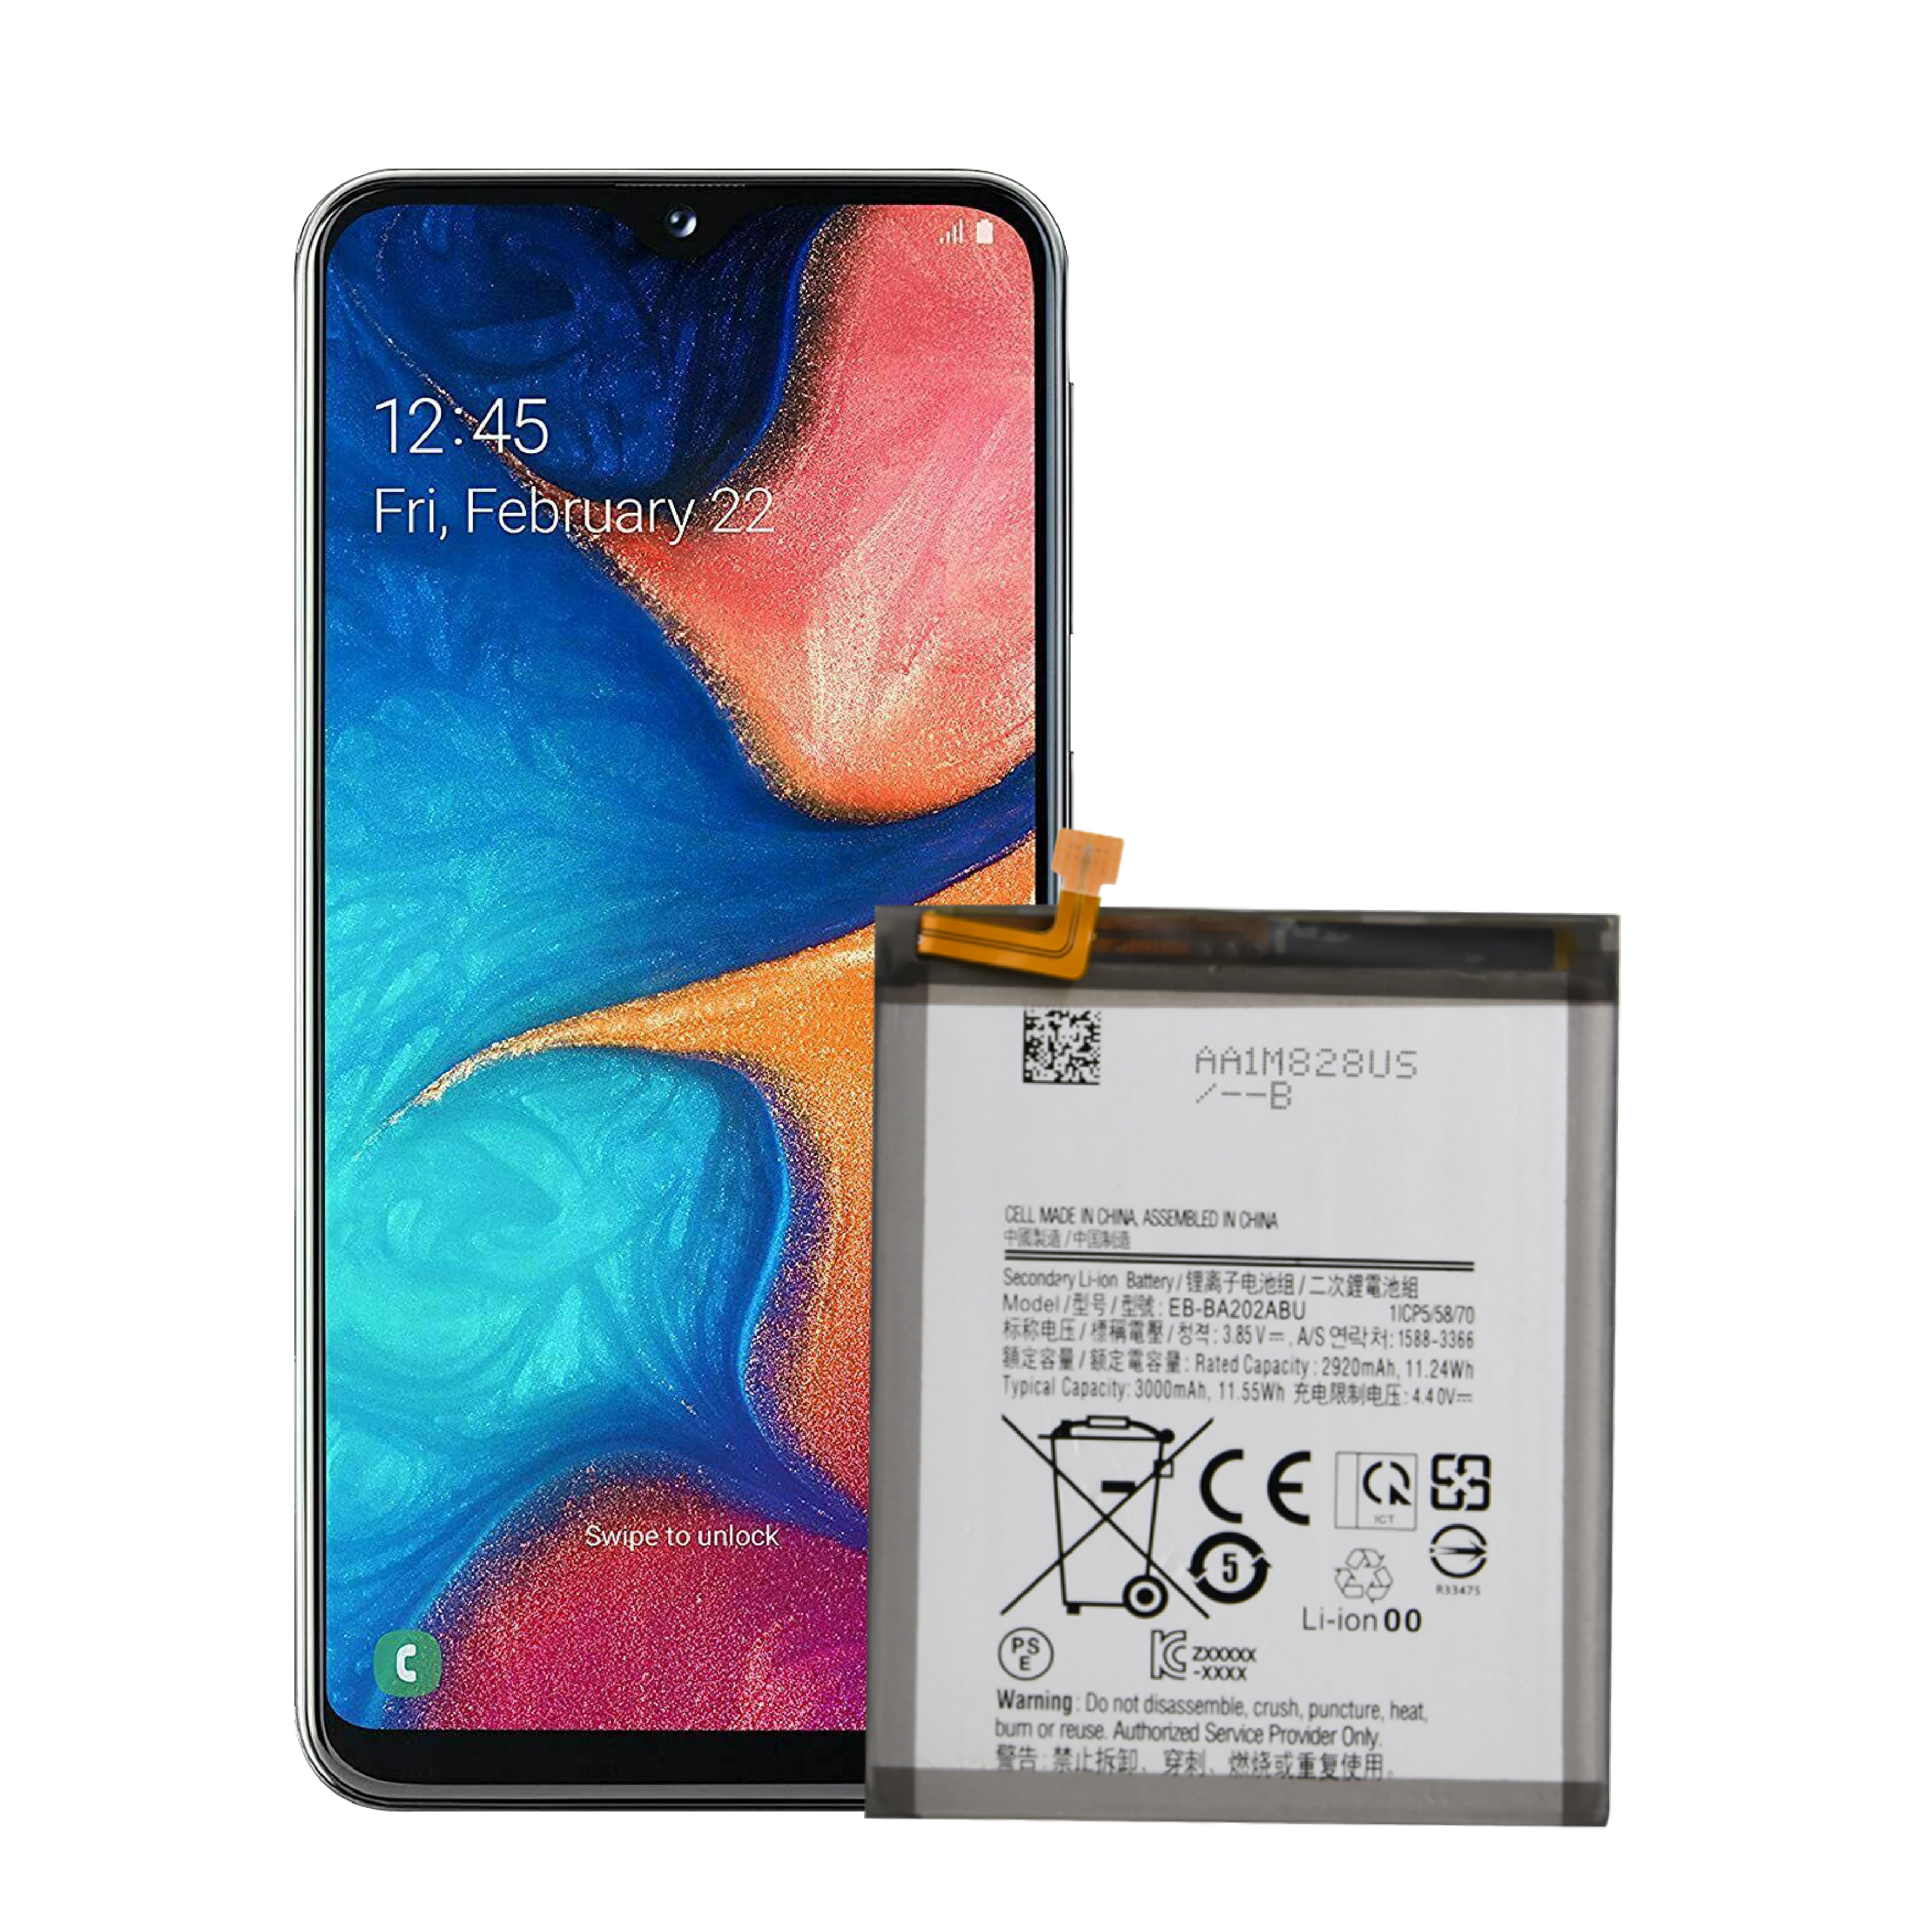 OEM փոխարինող բոլորովին նոր երկարատև ցիկլի հեռախոսի մարտկոց Samsung A20 Edge մարտկոցի համար